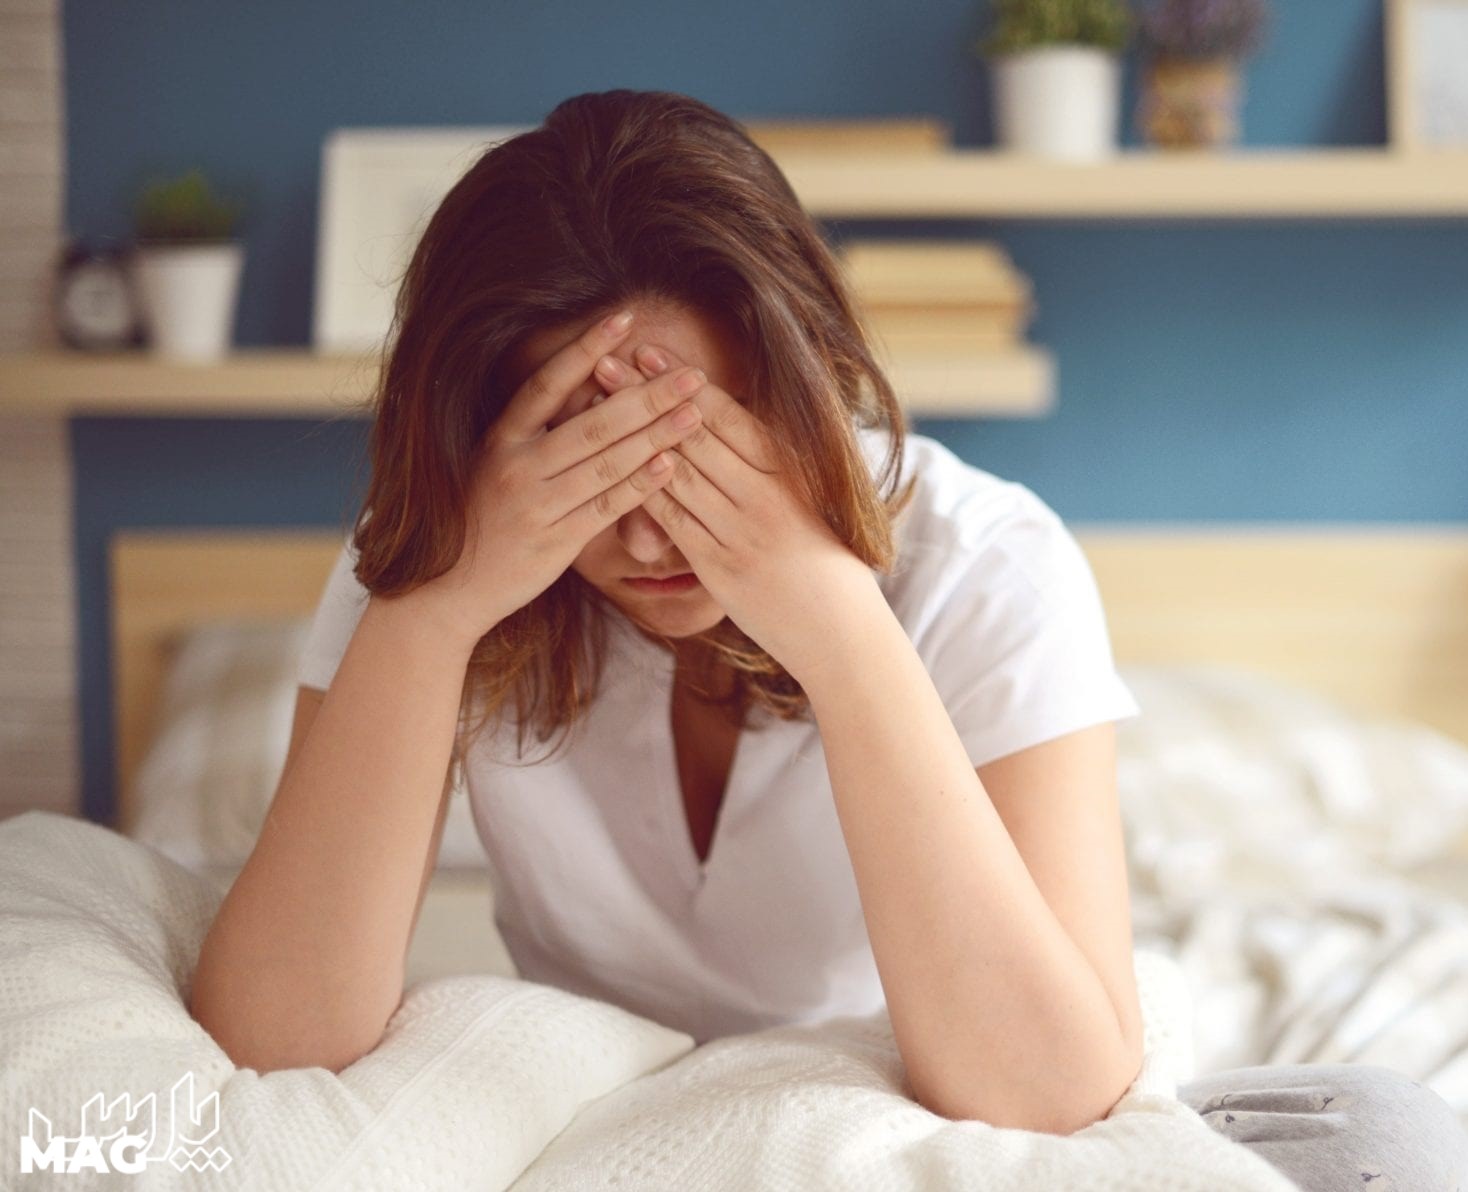 سردرد شبانه - درمان خانگی سردرد پیشانی و چشم